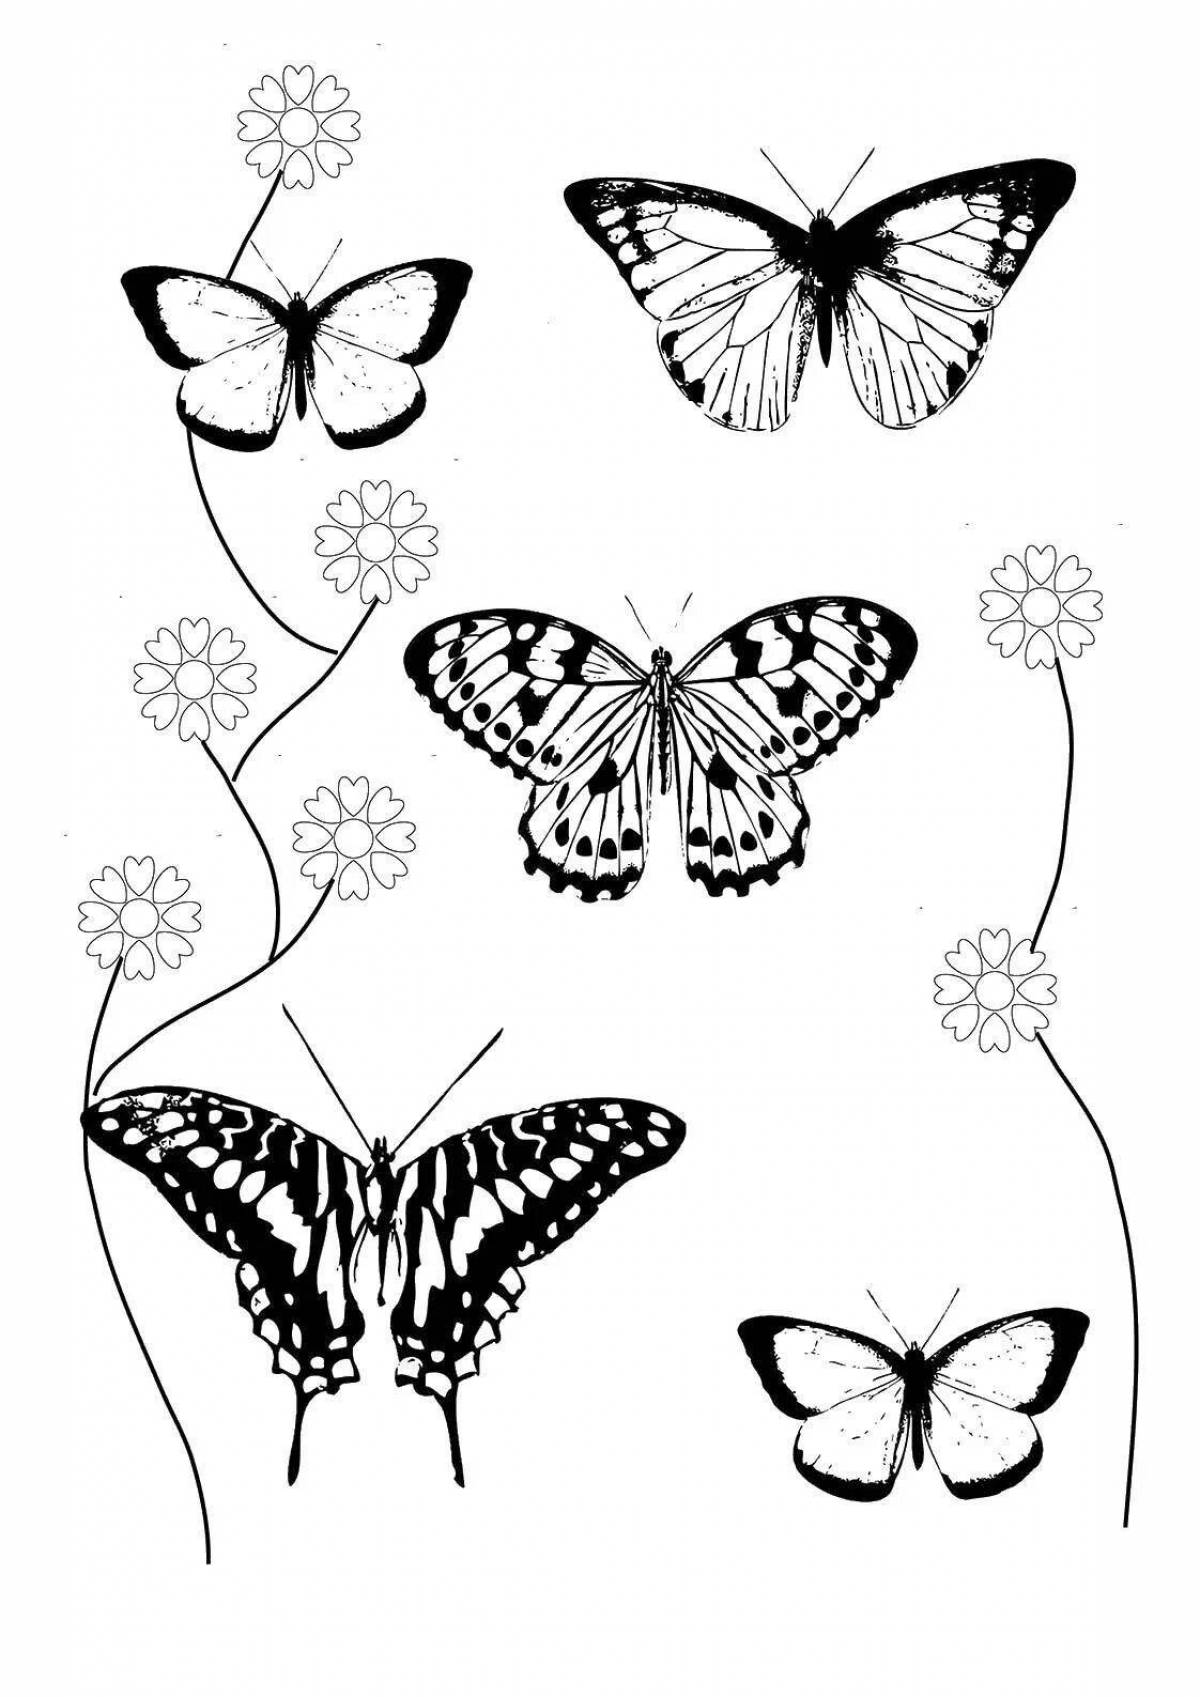 Fun many butterflies on one sheet